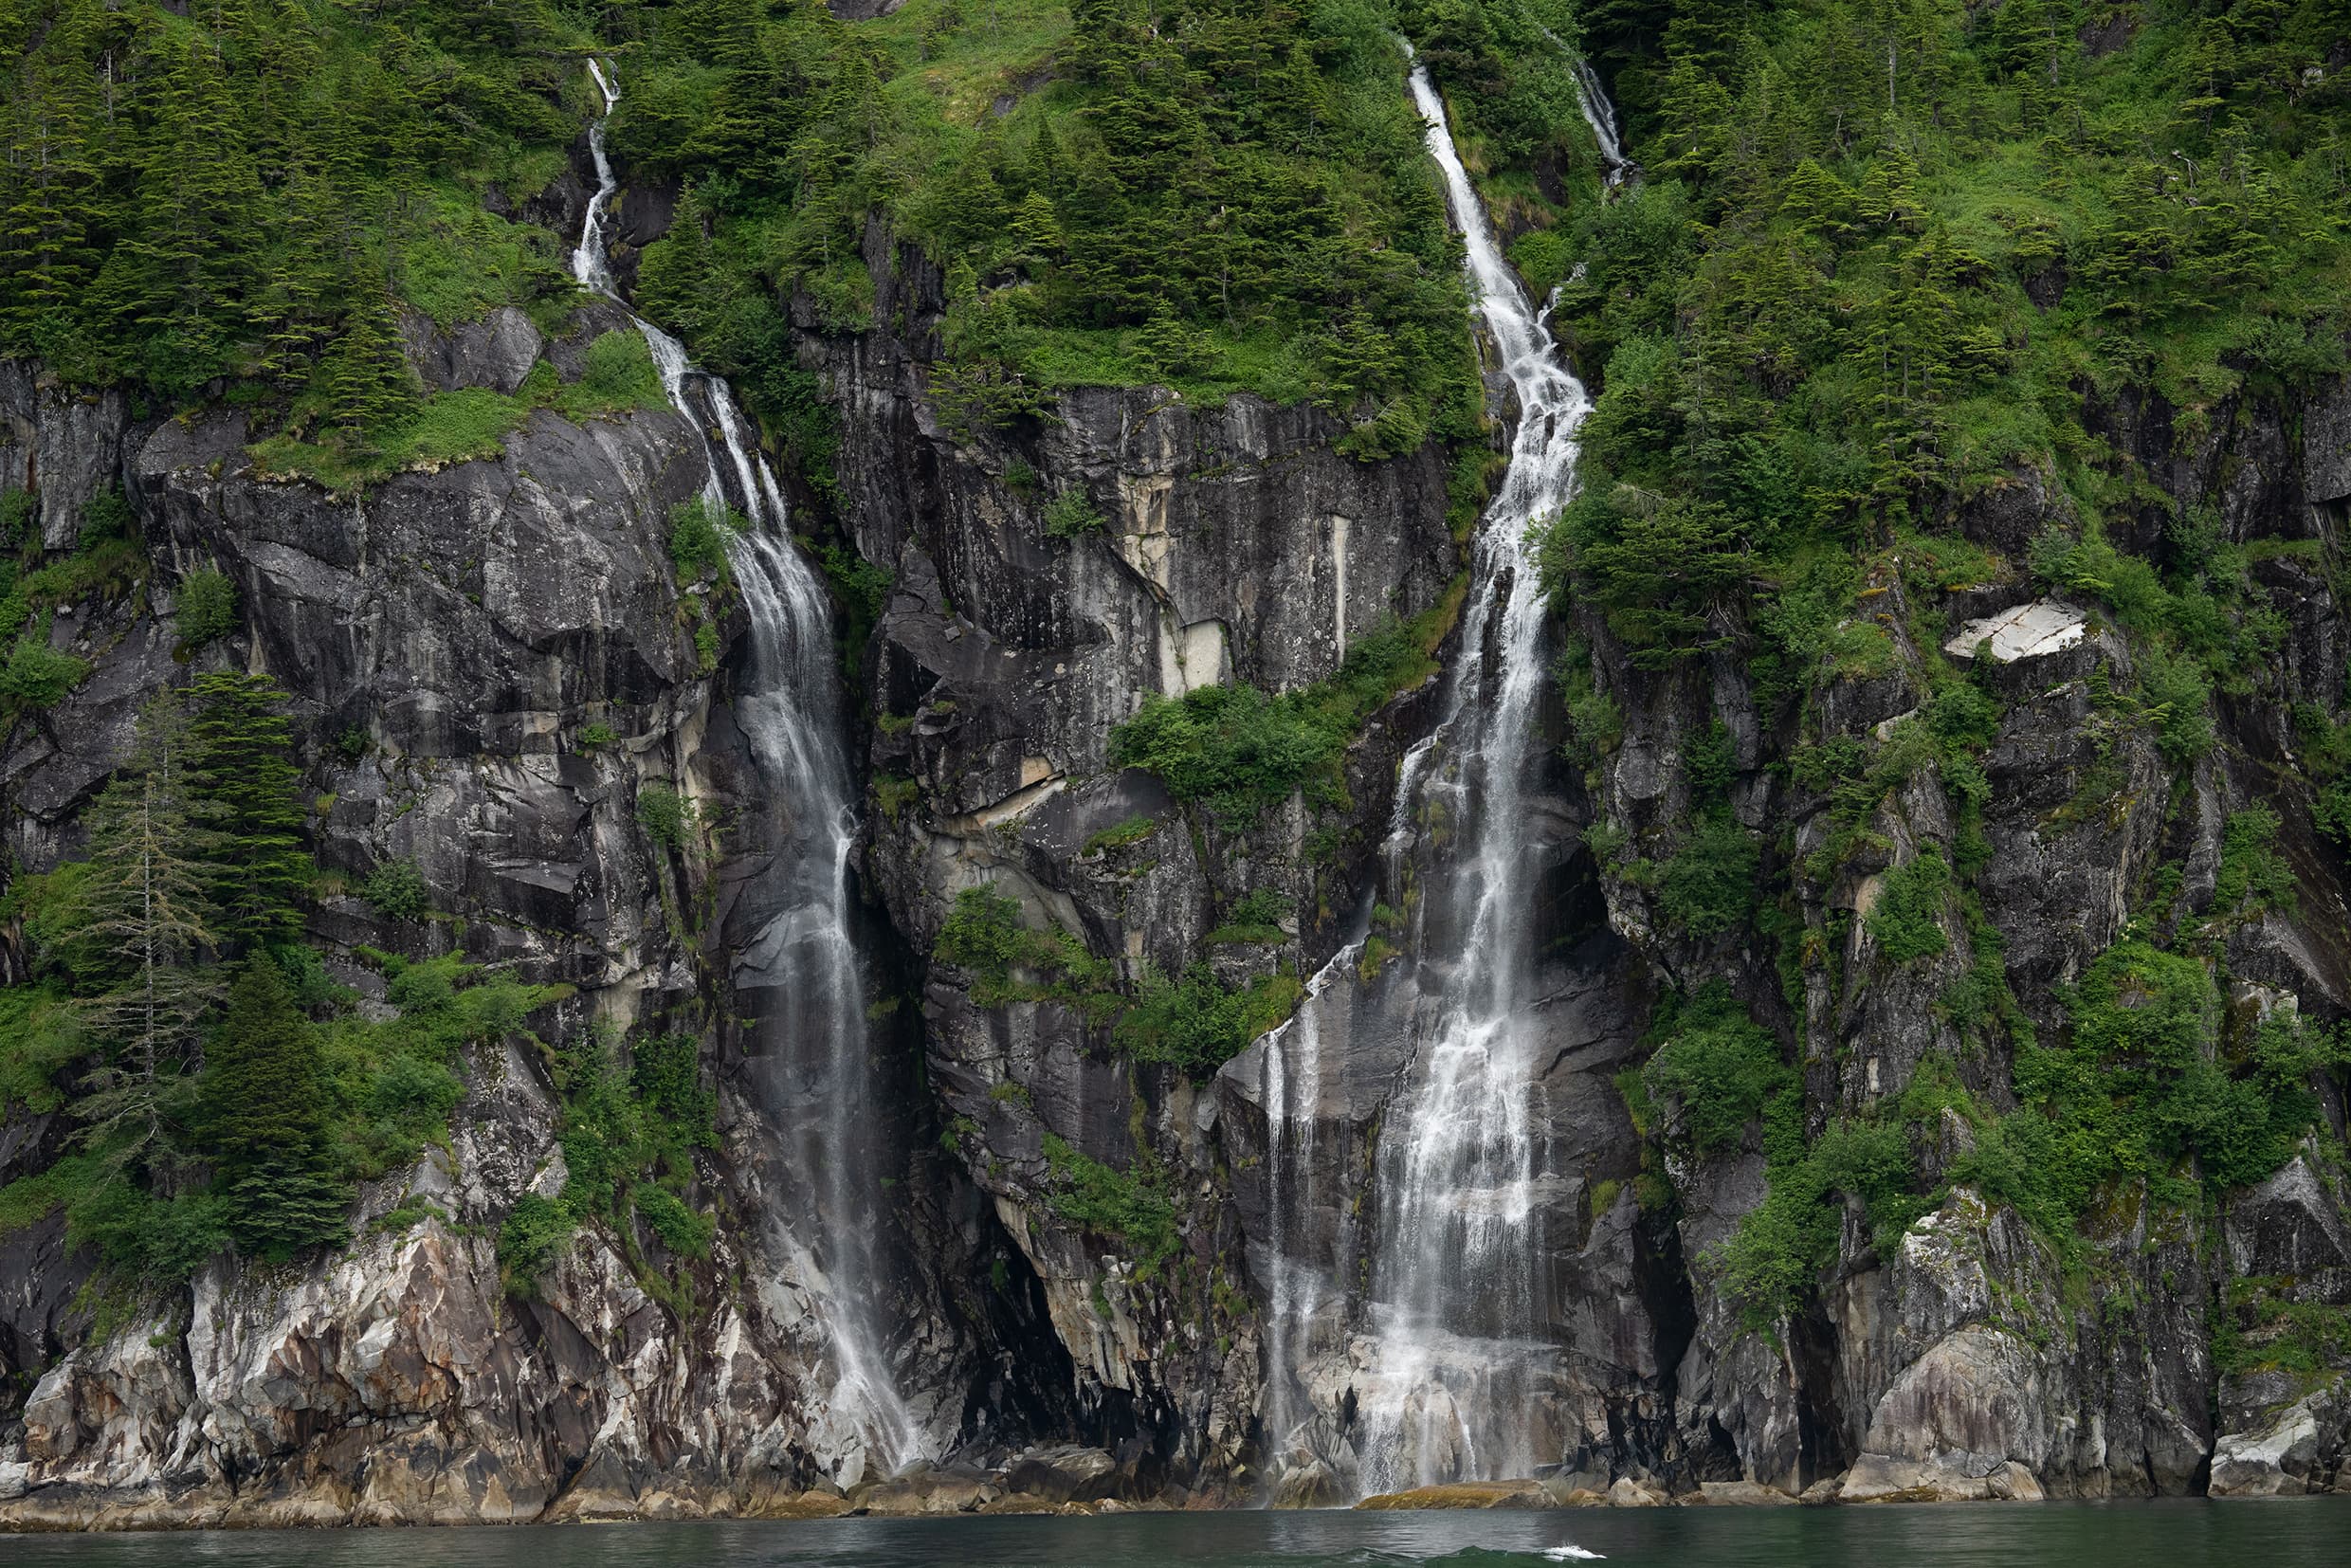 Fotka vodopádu focena pomocí objektivu Tamron 150-500mm pro Nikon Z